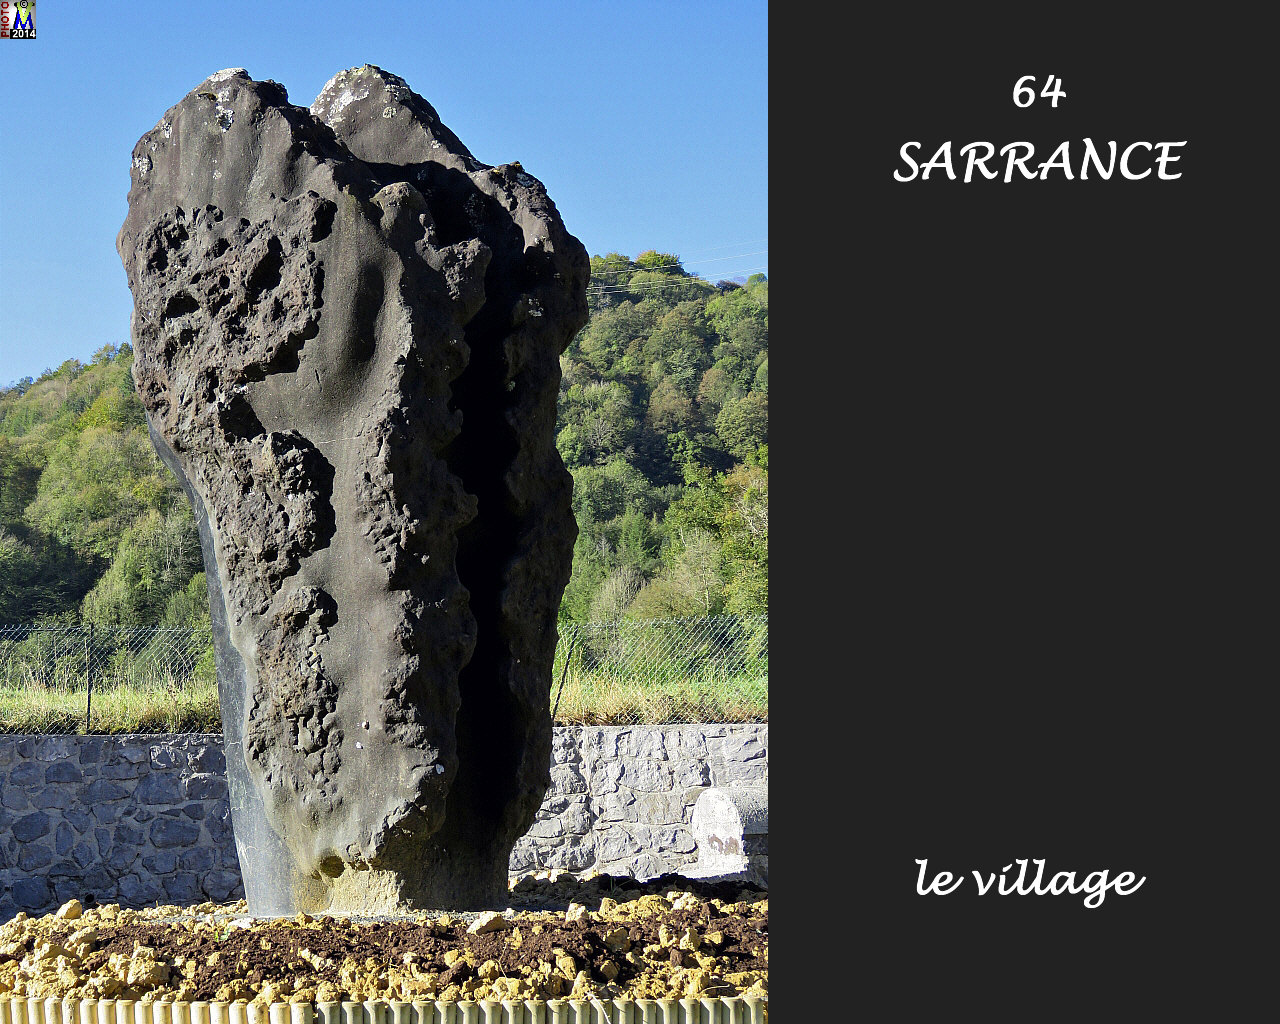 64SARRANCE_village_122.jpg